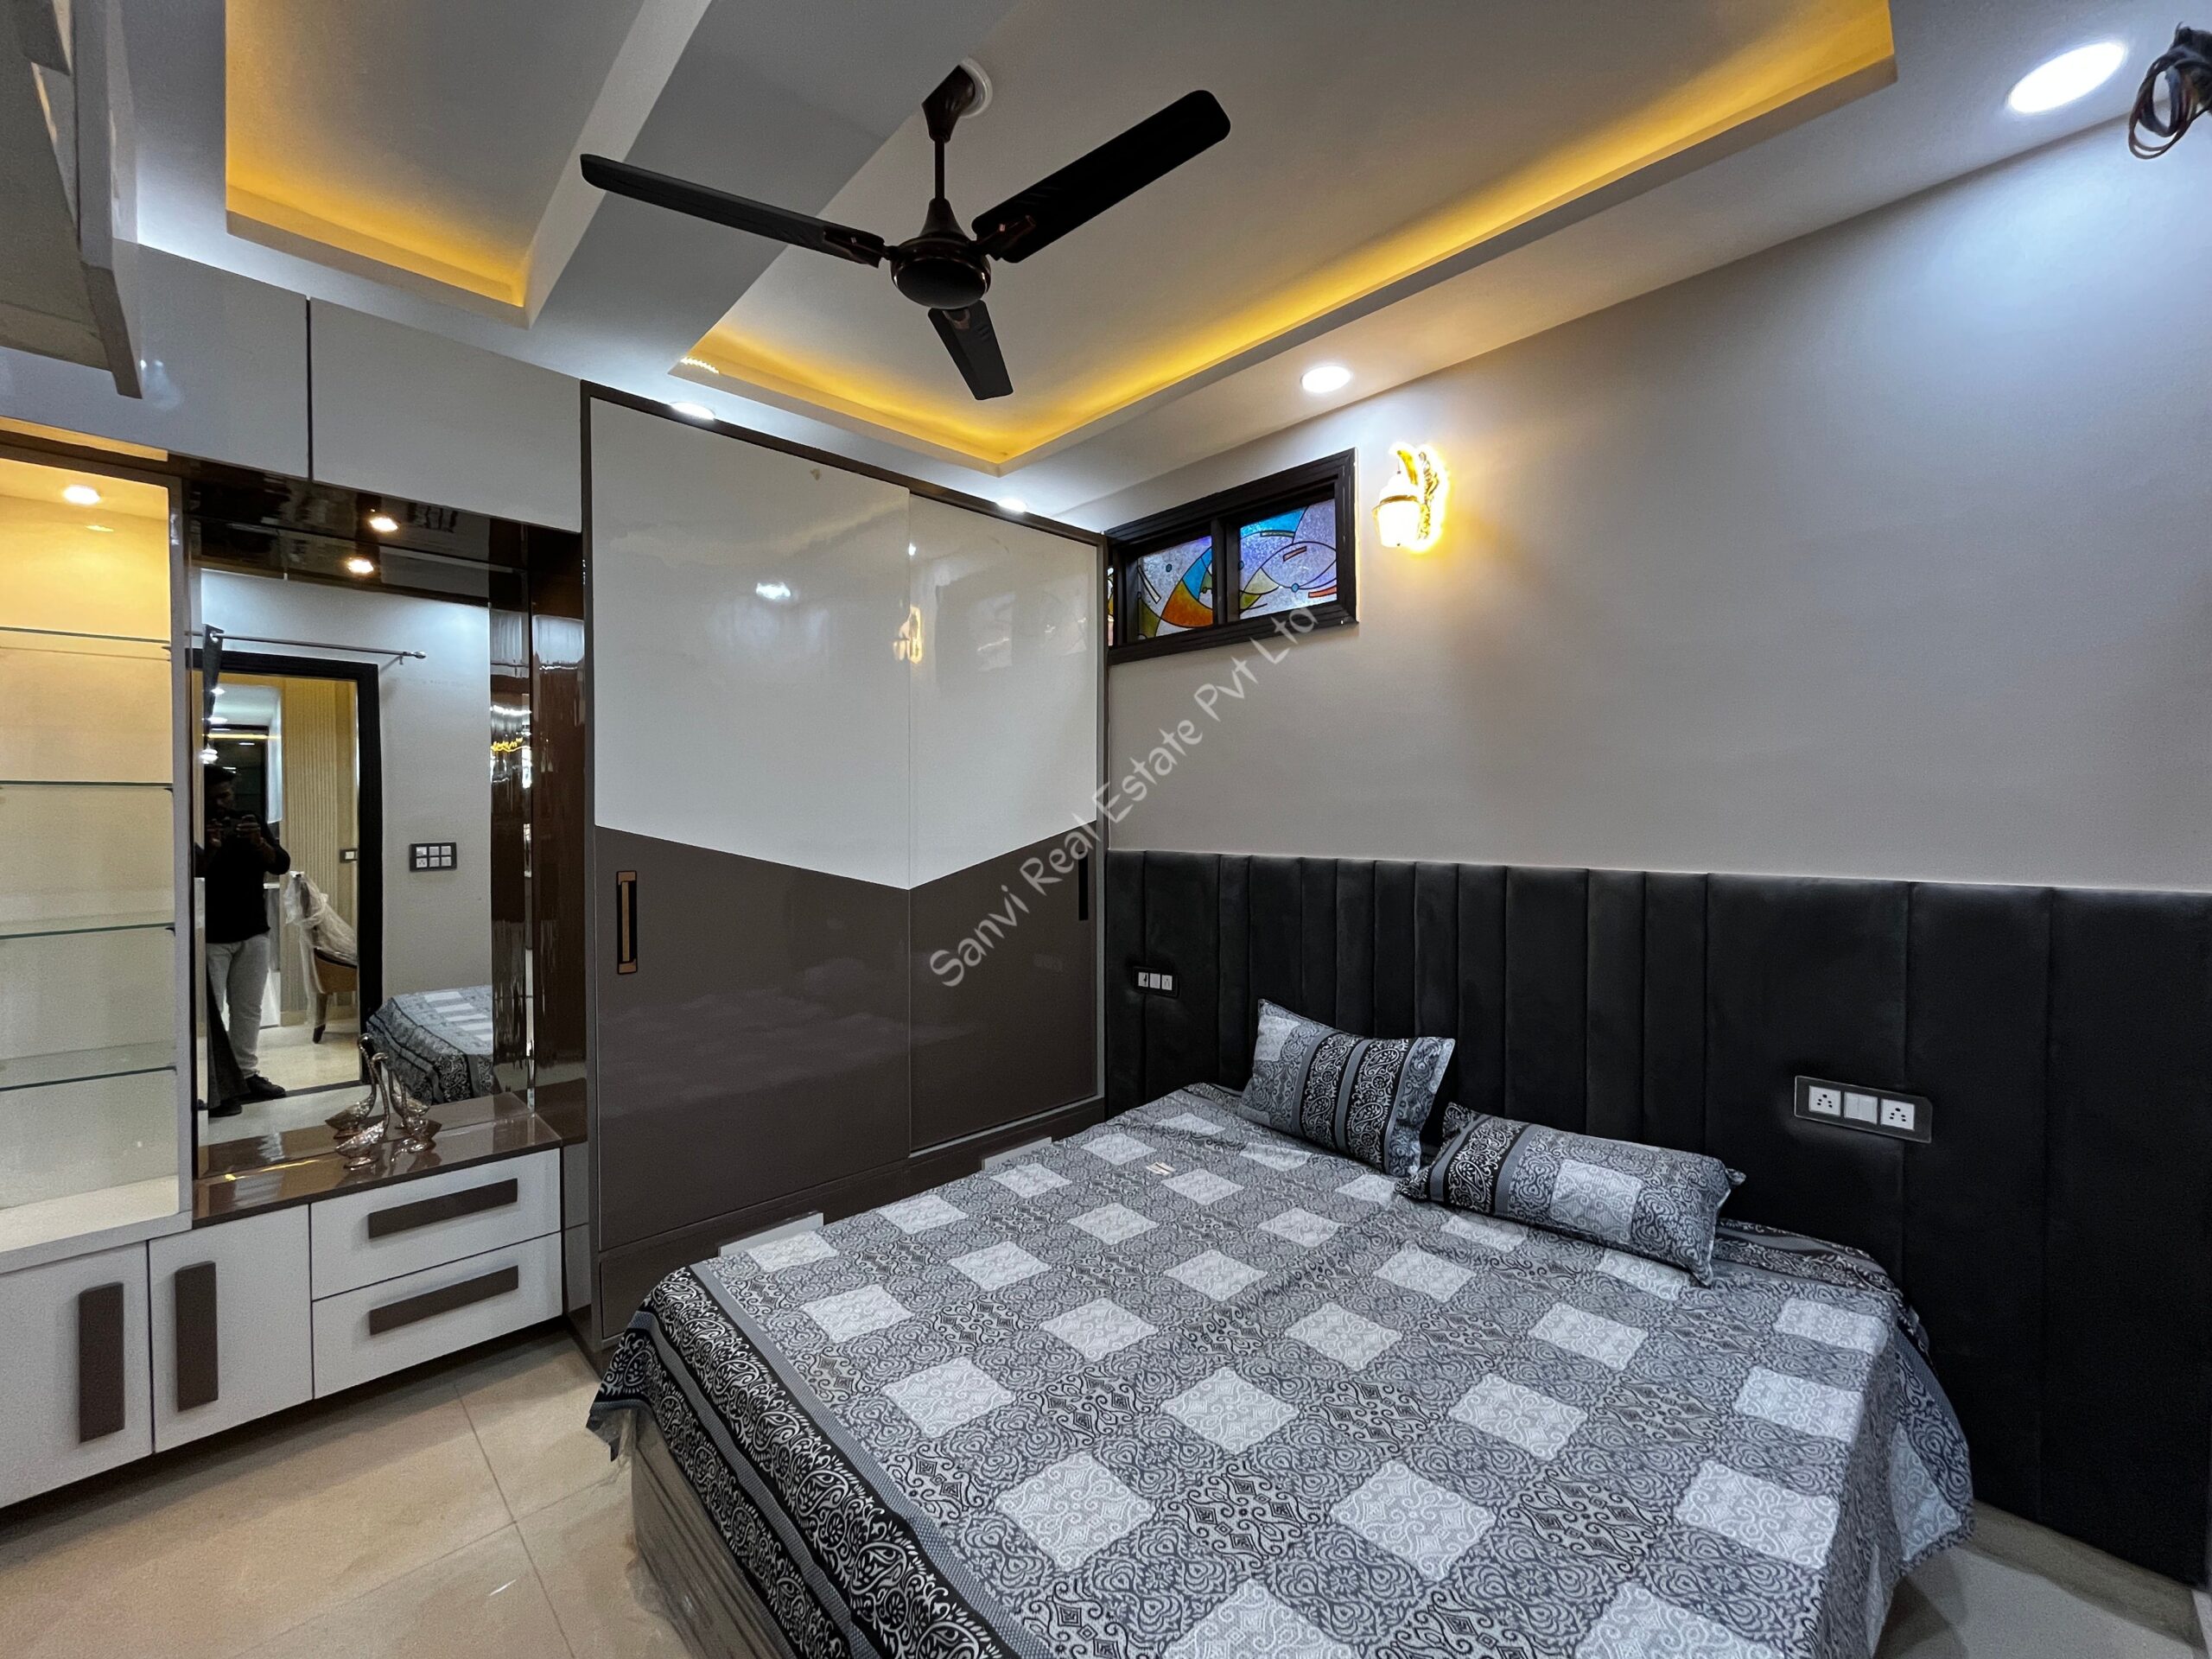 4 BHK Premium Property in Dwarka Mor | M-Sanvi Real Estate